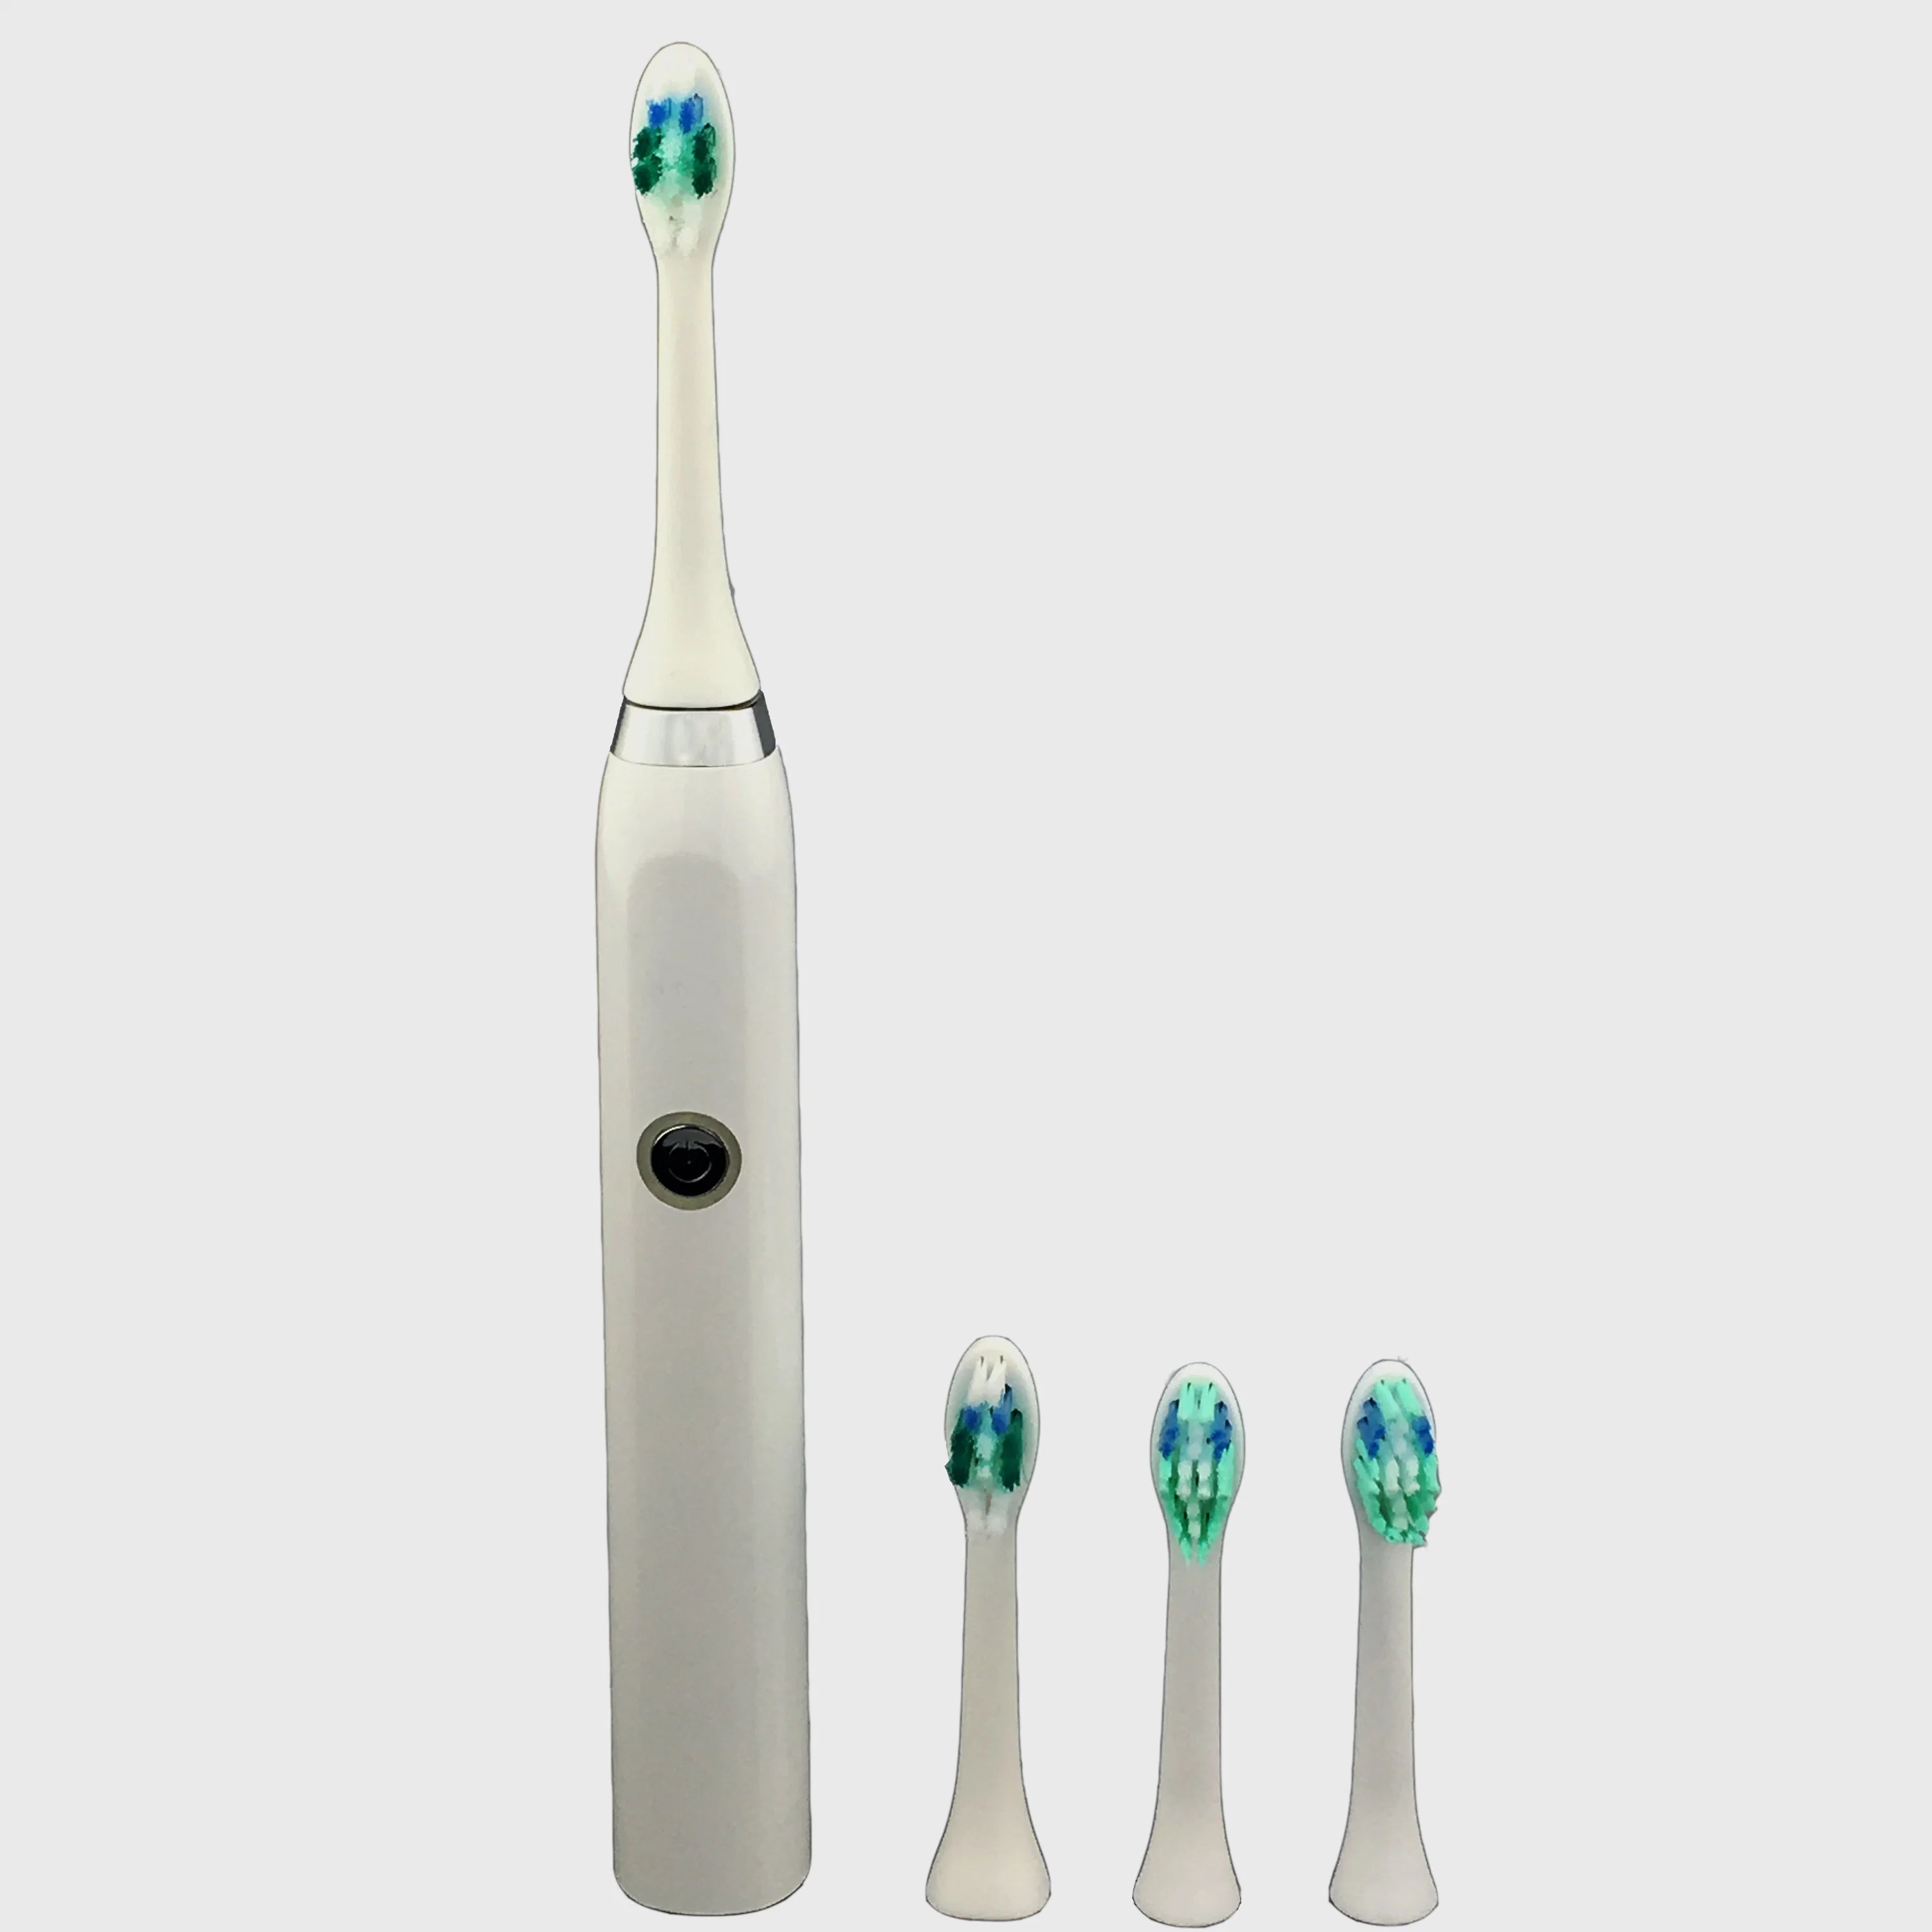 Adult Ipx7 Waterproof Electric Ultrasonic Toothbrush